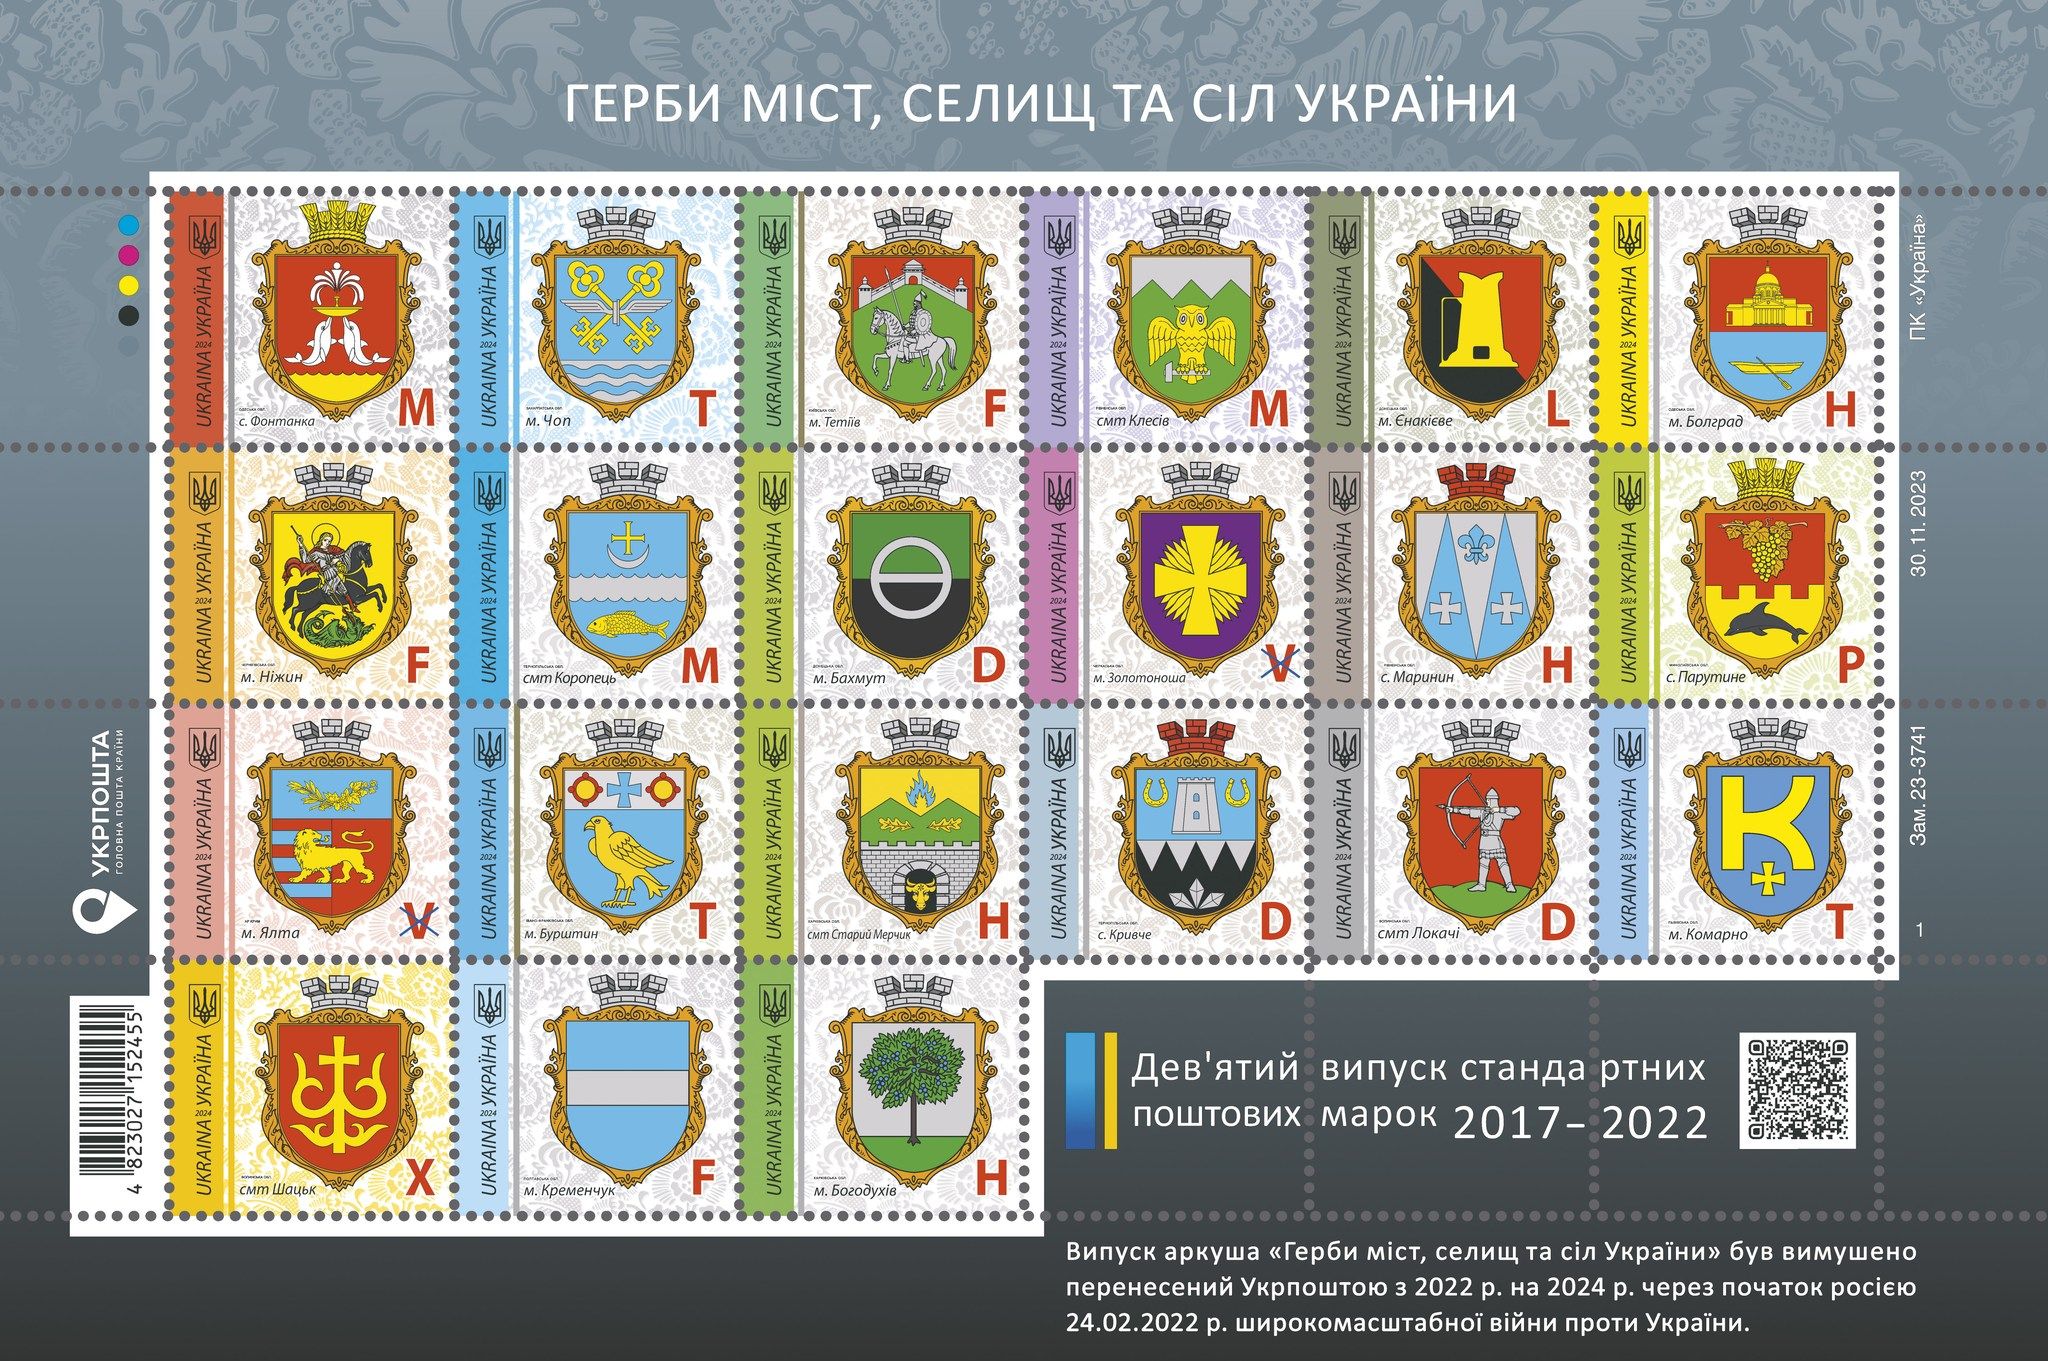 Останній набір марок із серії "Герби міст, селищ та сіл України".